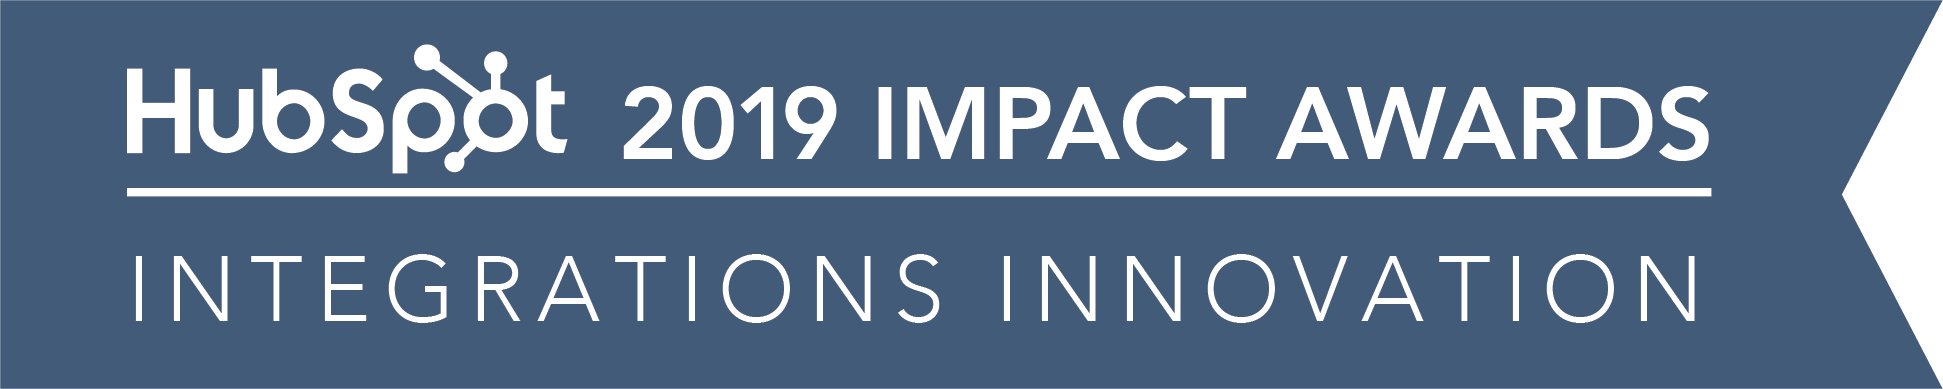 Hubspot_ImpactAwards_2019_IntegrationsInnovation-02-2